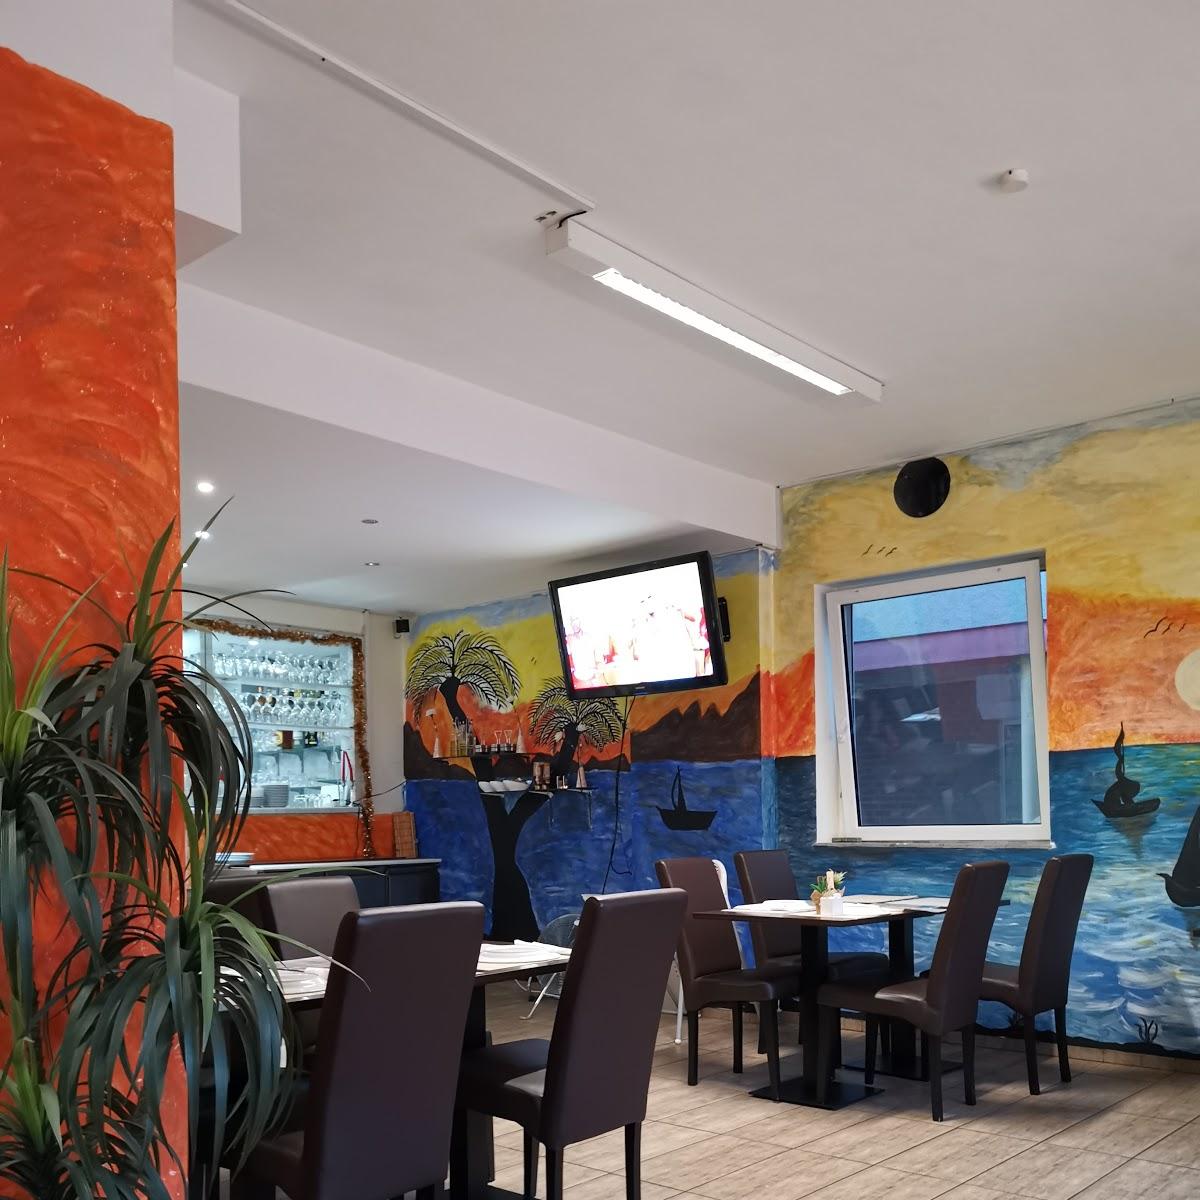 Restaurant "Rodizio Luanda" in Bremerhaven